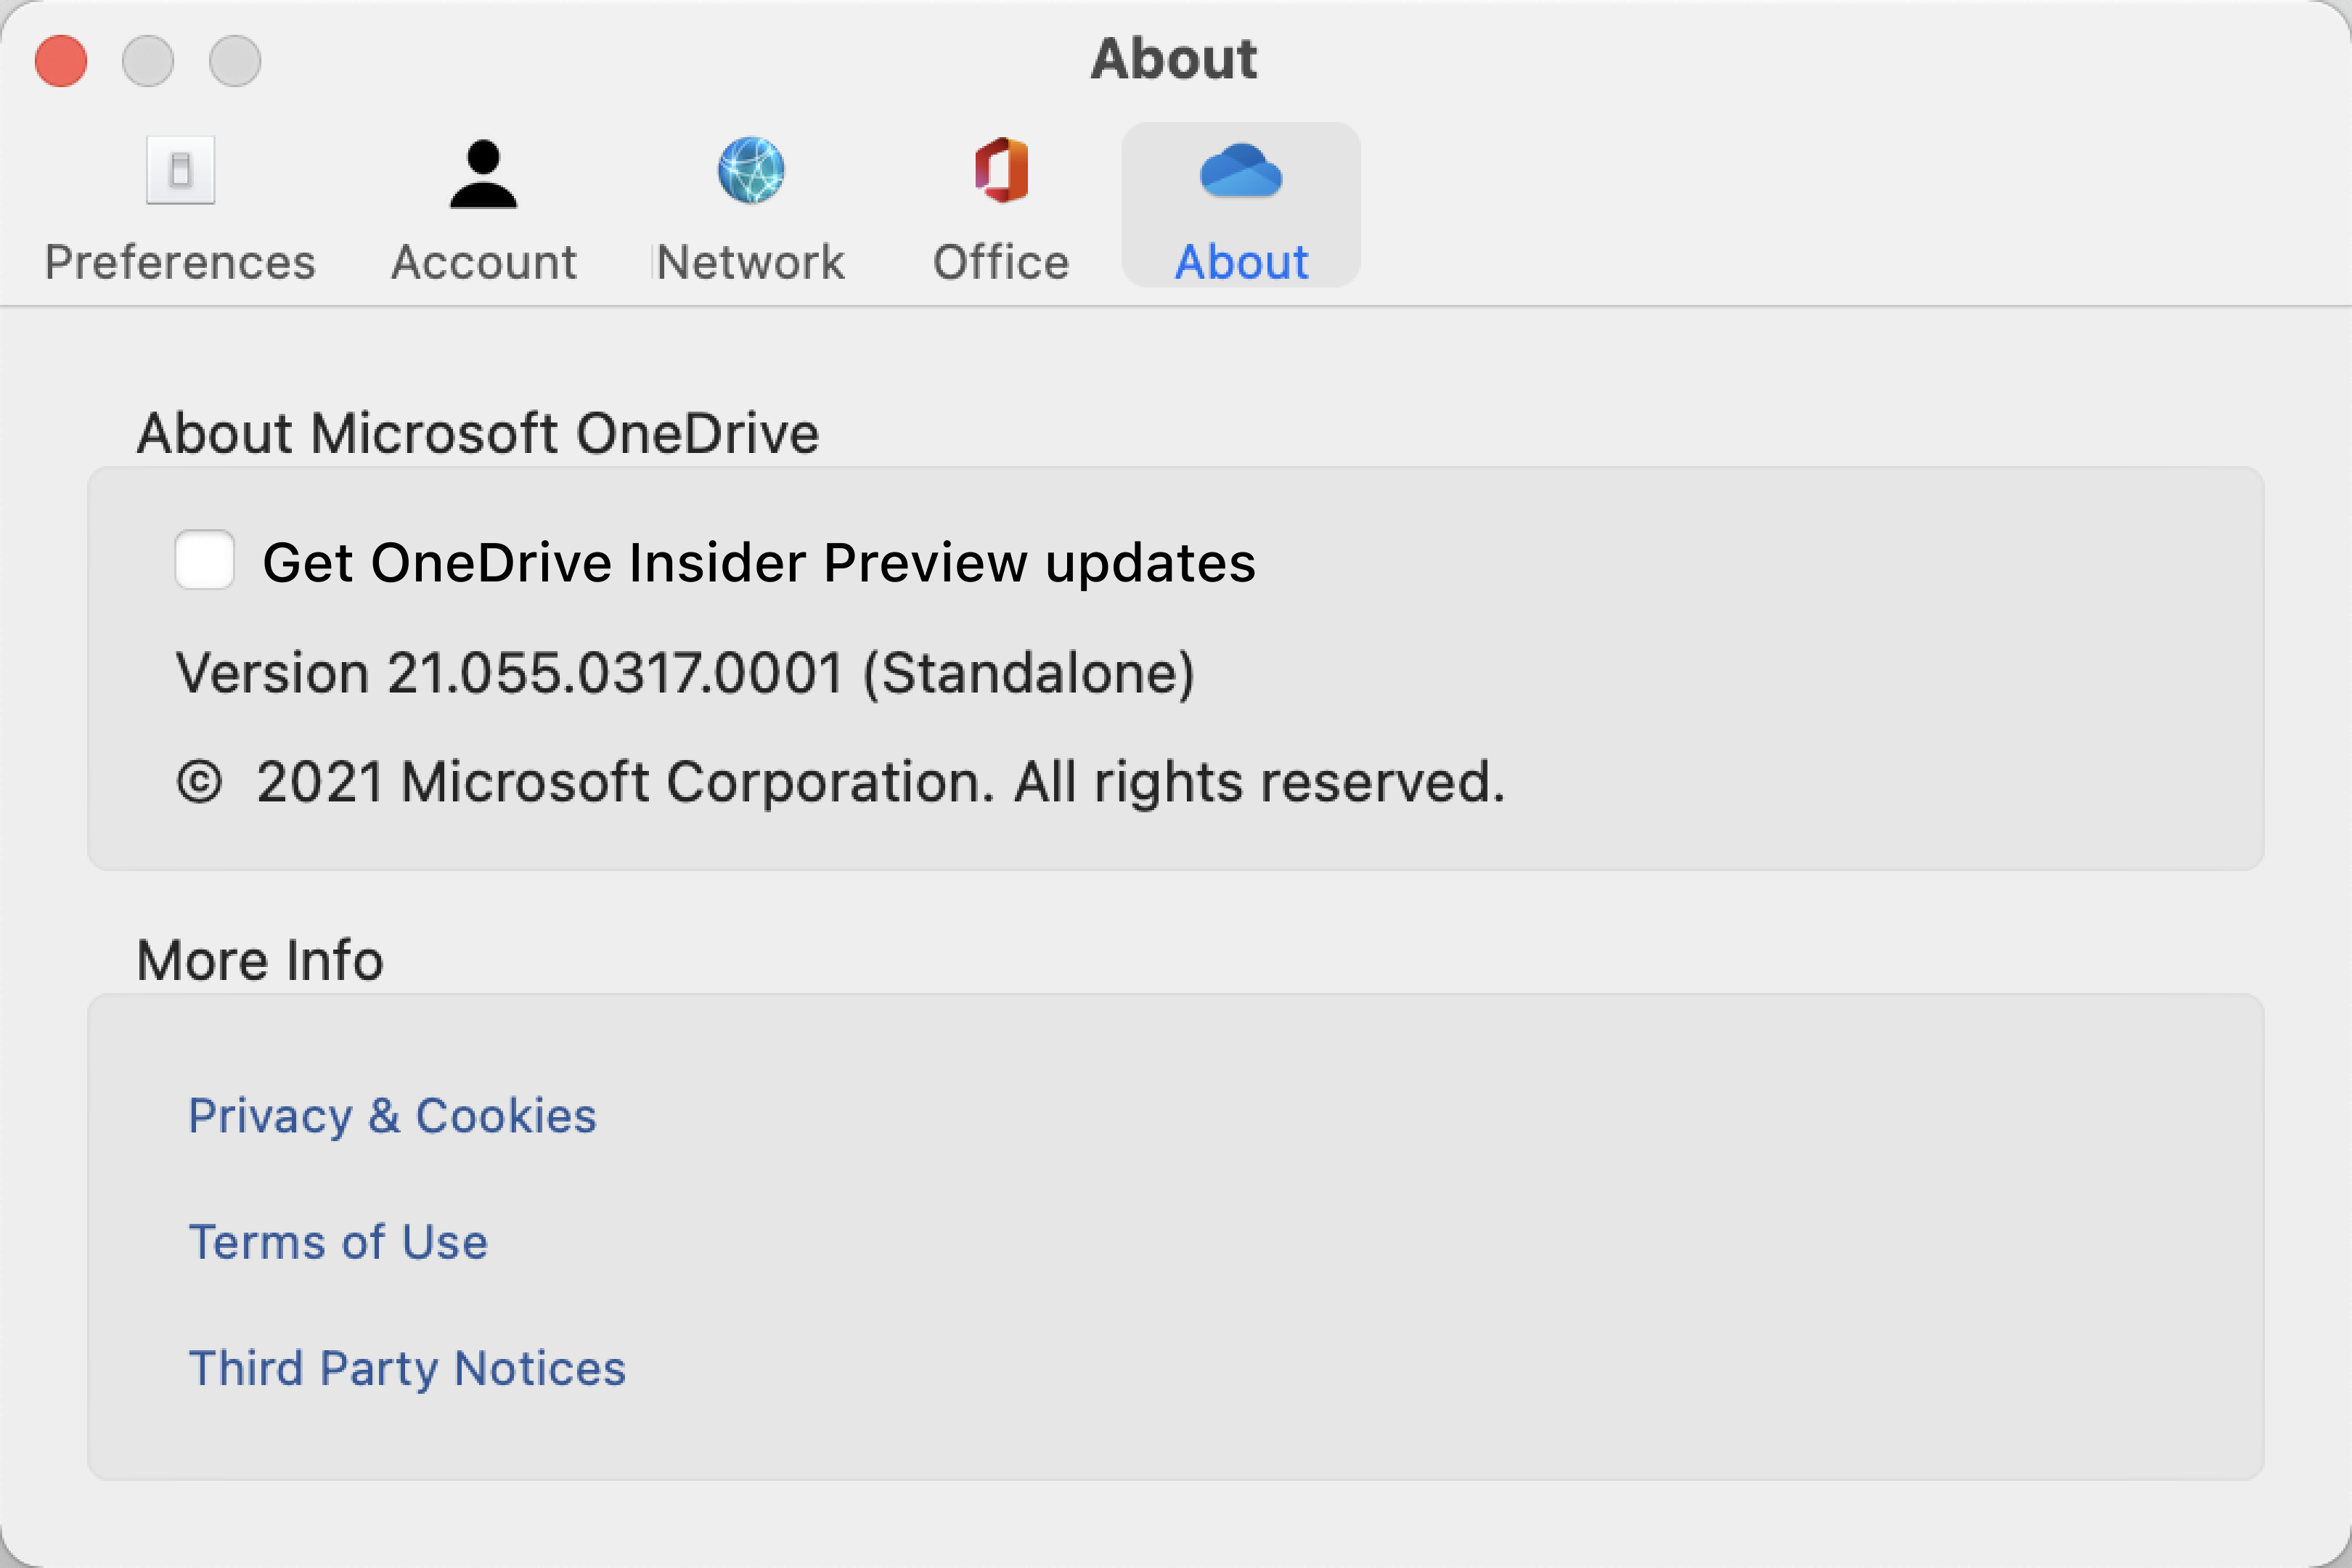 แสดงหน้าจอ เกี่ยวกับ ของ OneDrive บน Mac ข้อมูลรุ่นและเวอร์ชันอยู่ภายใต้ "เกี่ยวกับ Microsoft OneDrive"